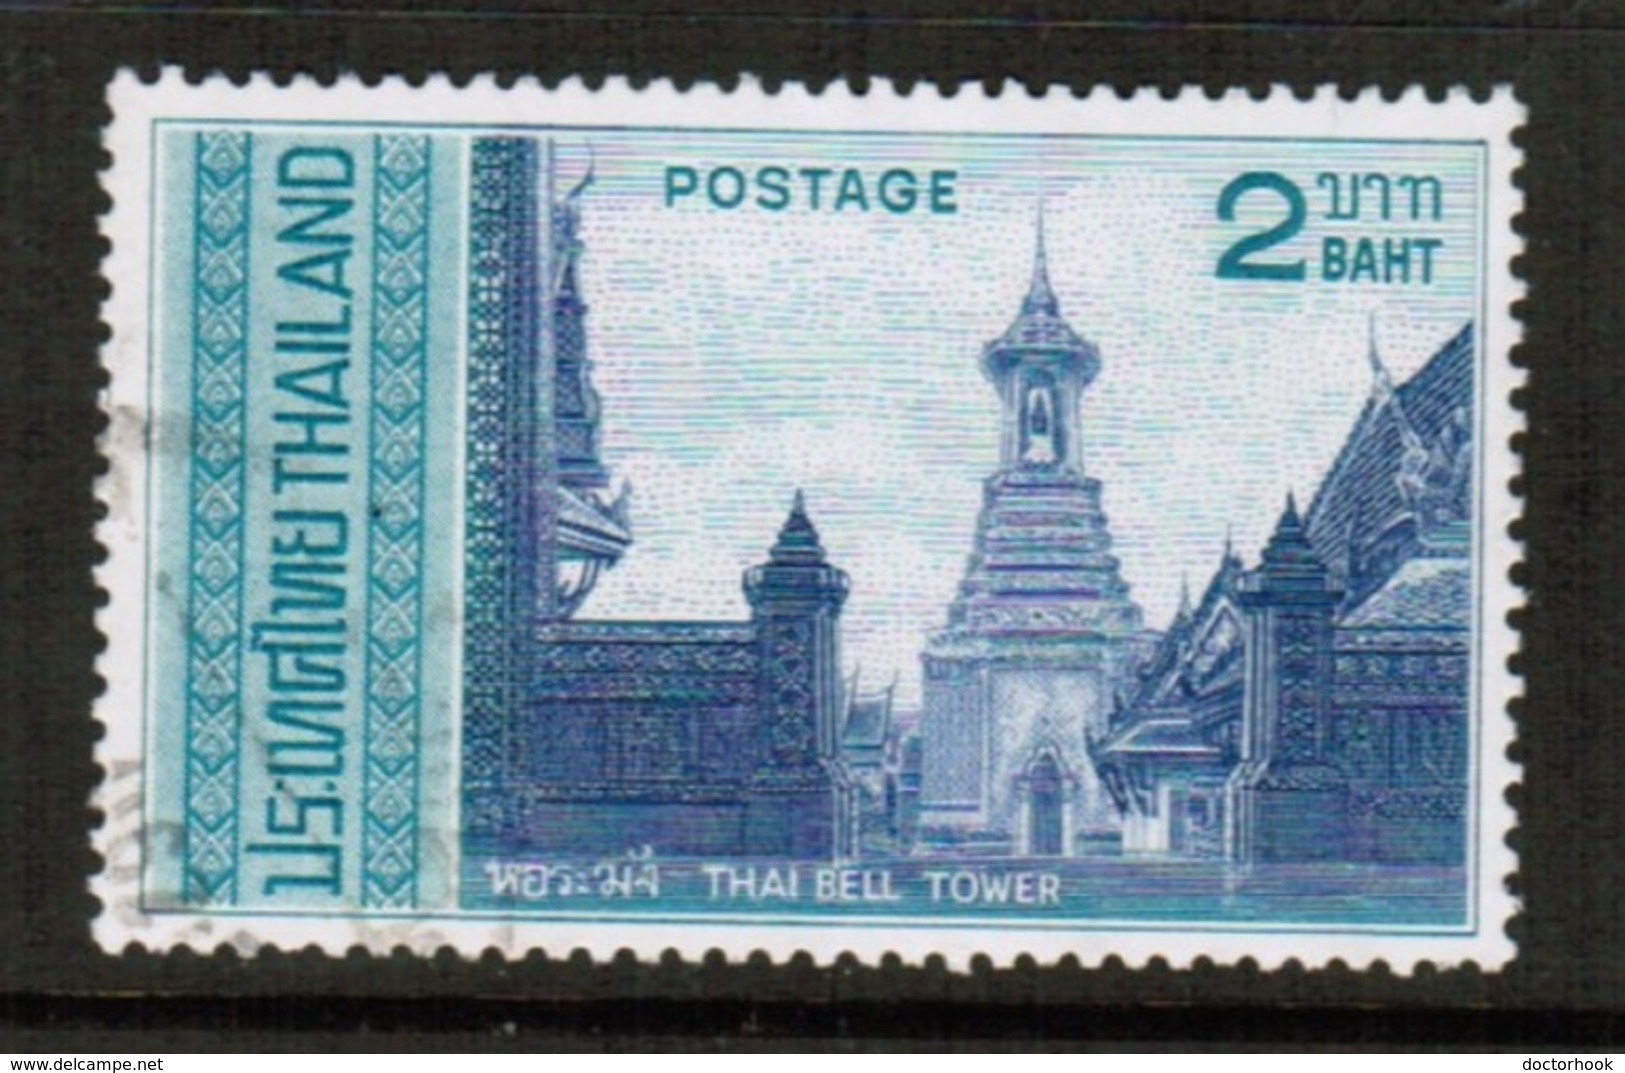 THAILAND  Scott # 487 VF USED (Stamp Scan # 491) - Thailand